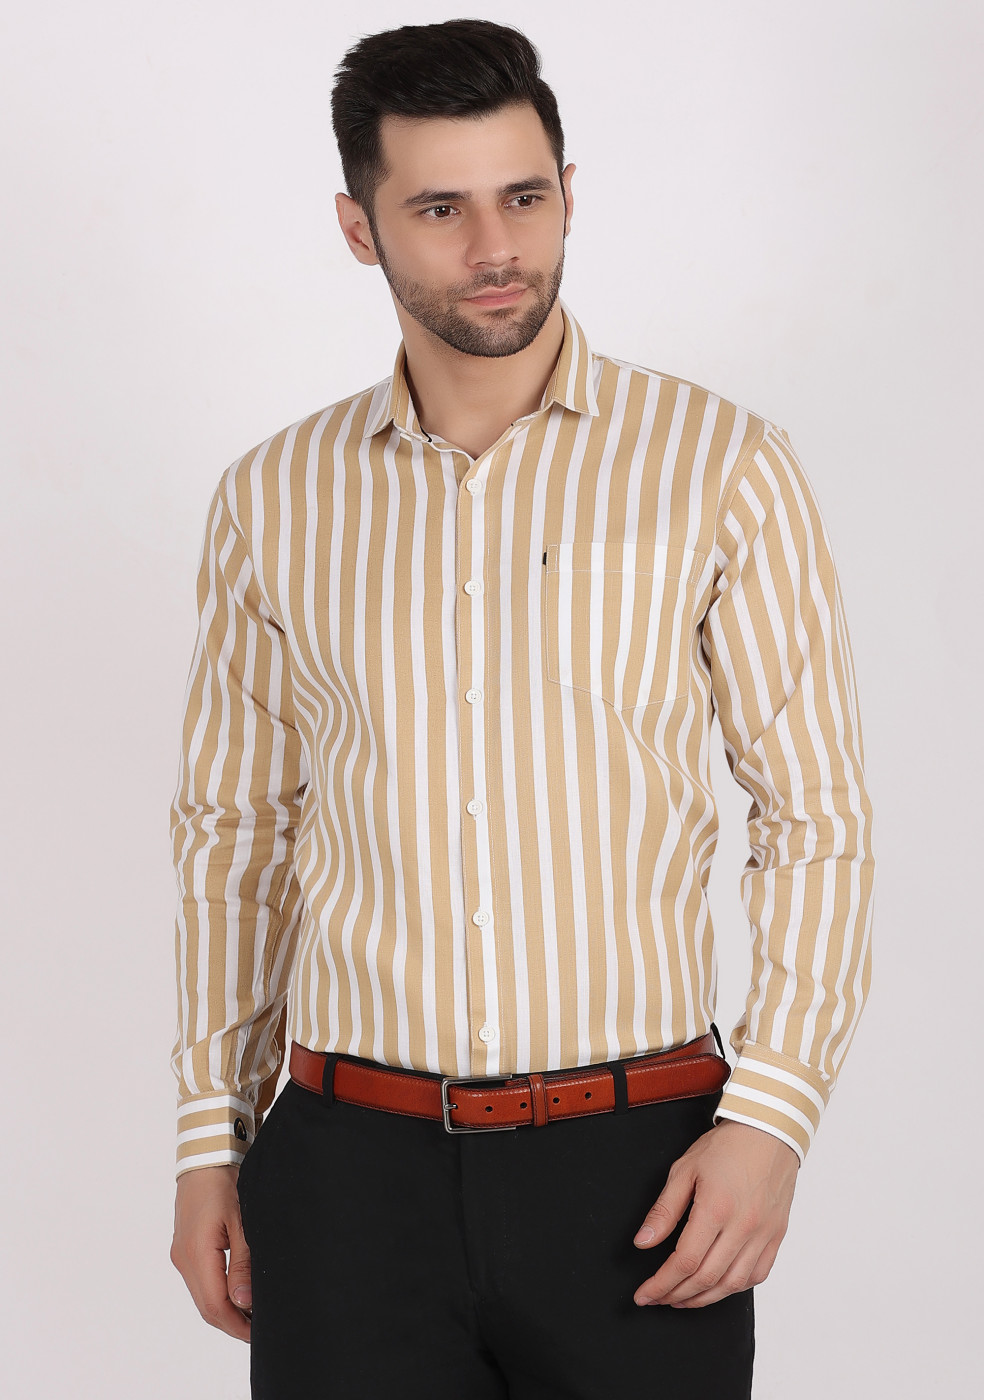 Buy online ASHTOM Mustard White Lining Shirt For Men